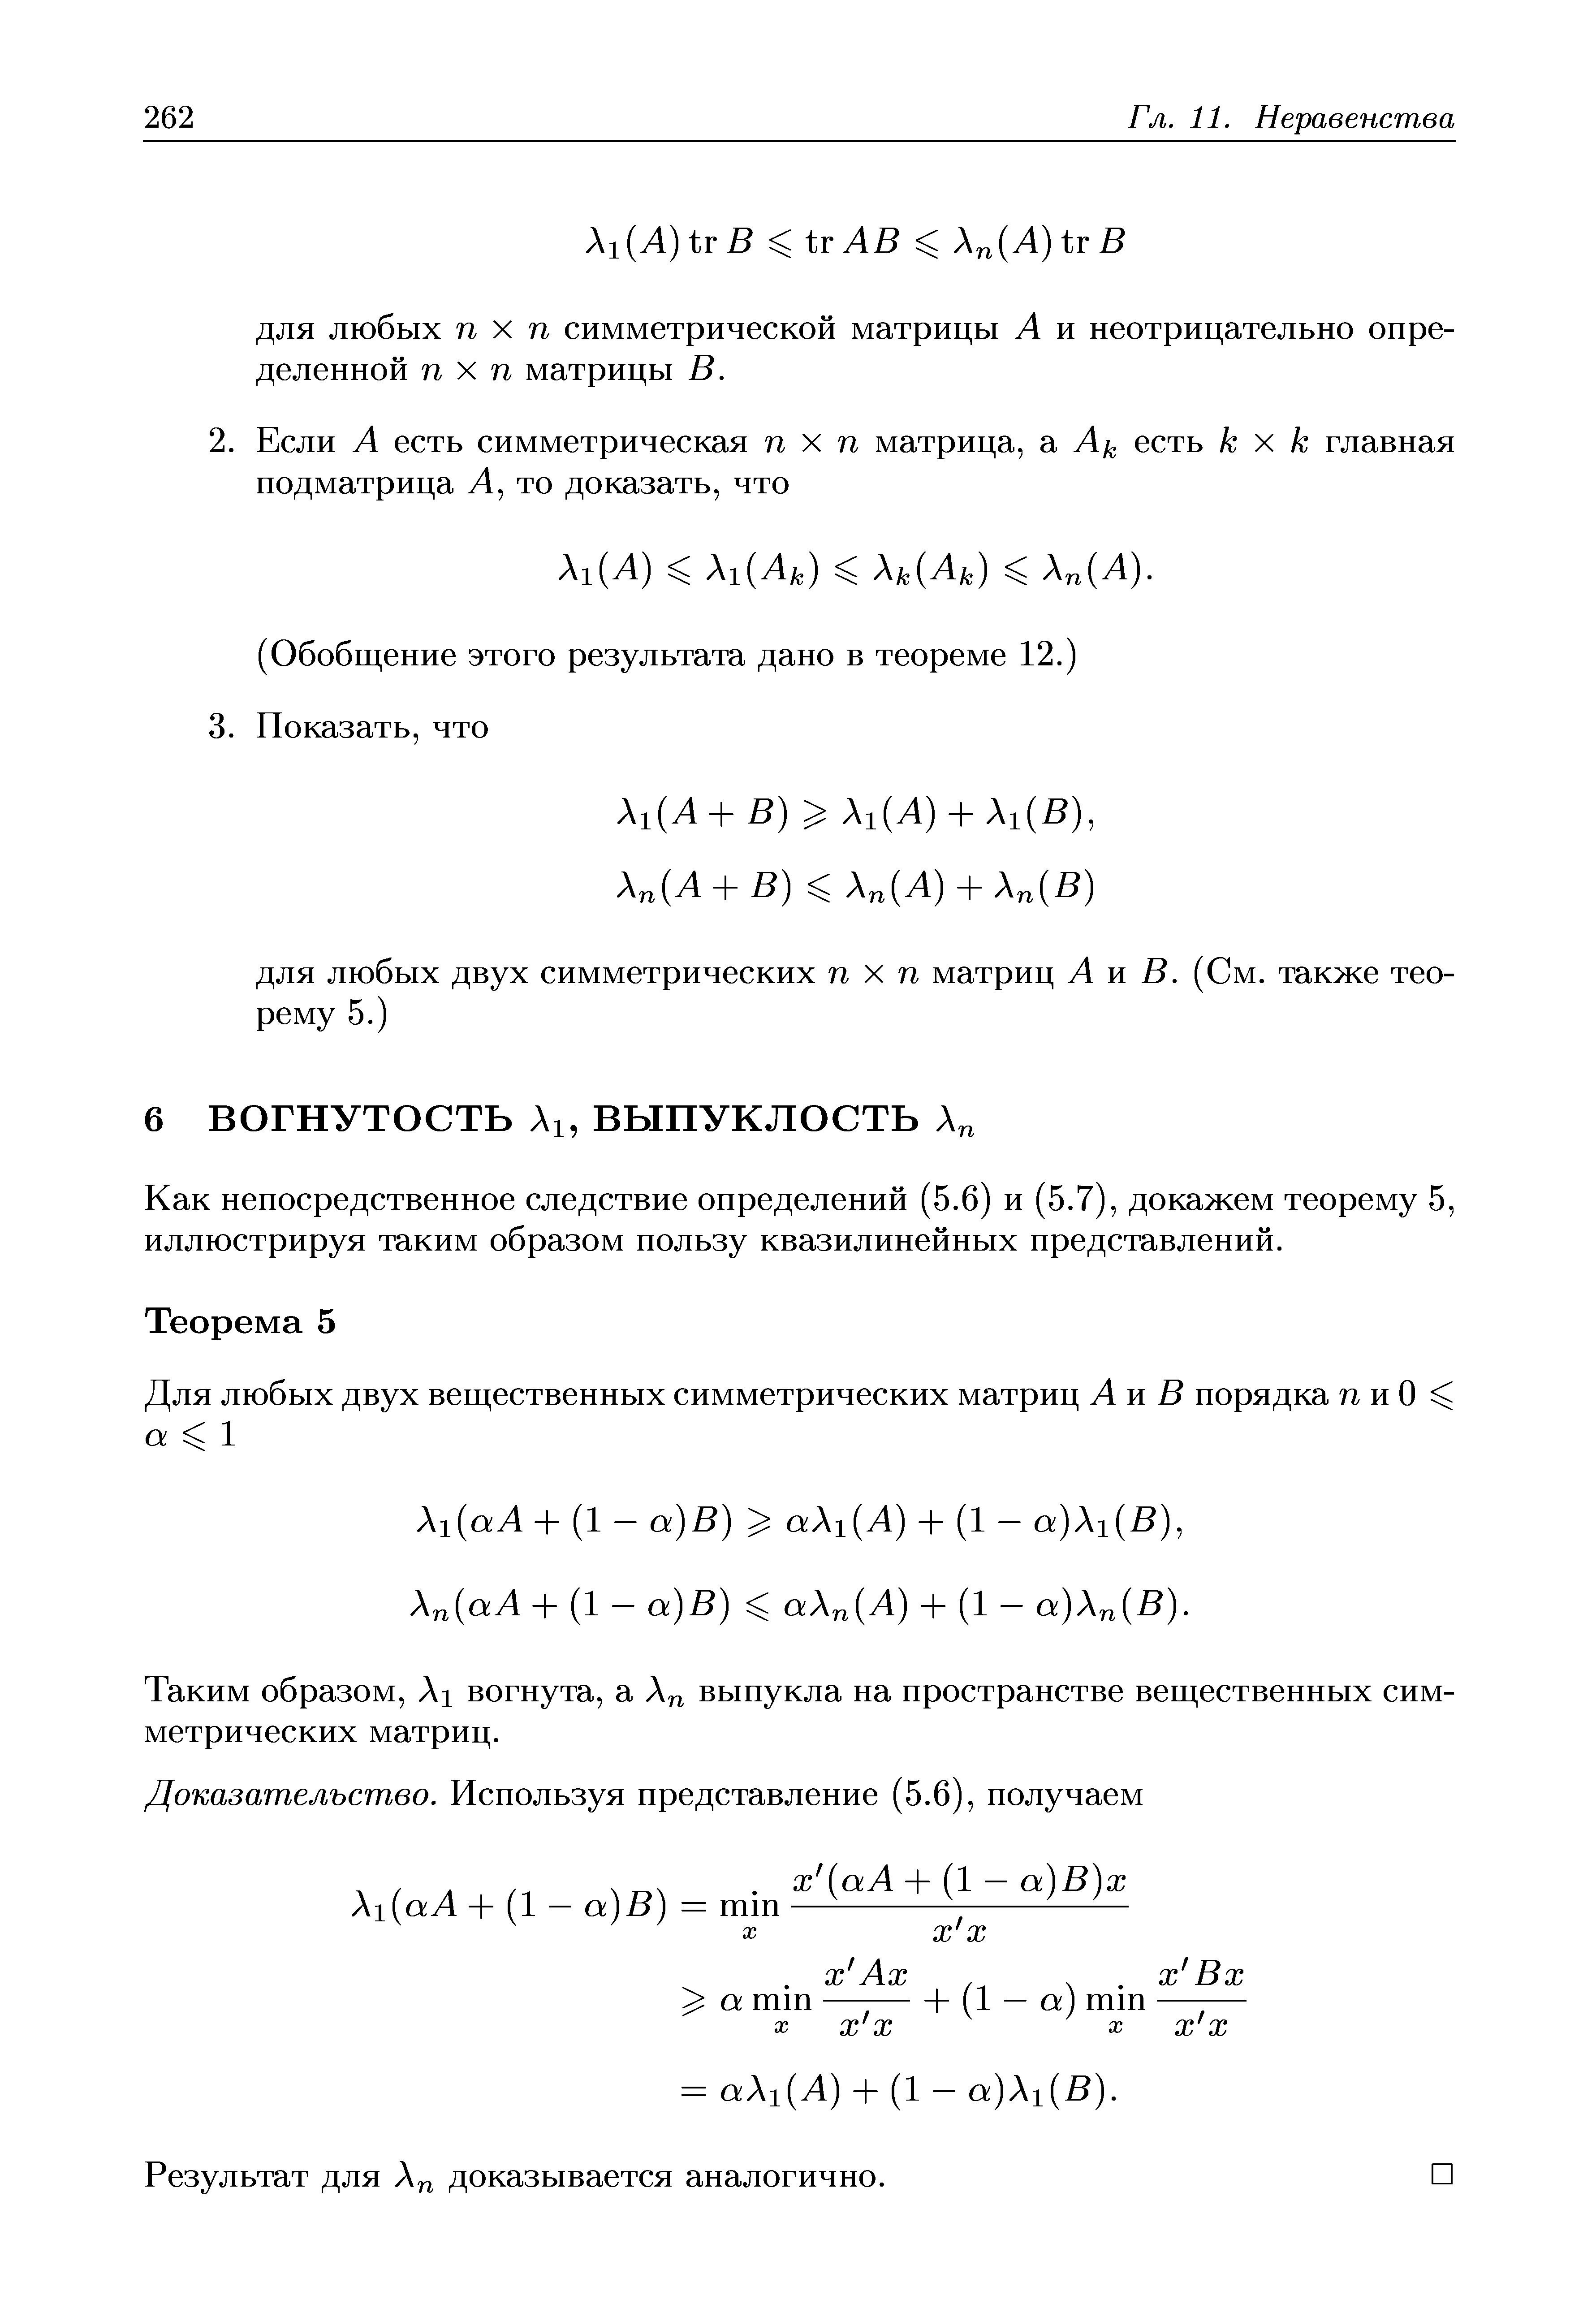 Как непосредственное следствие определений (5.6) и (5.7), докажем теорему 5, иллюстрируя таким образом пользу квазилинейных представлений.
